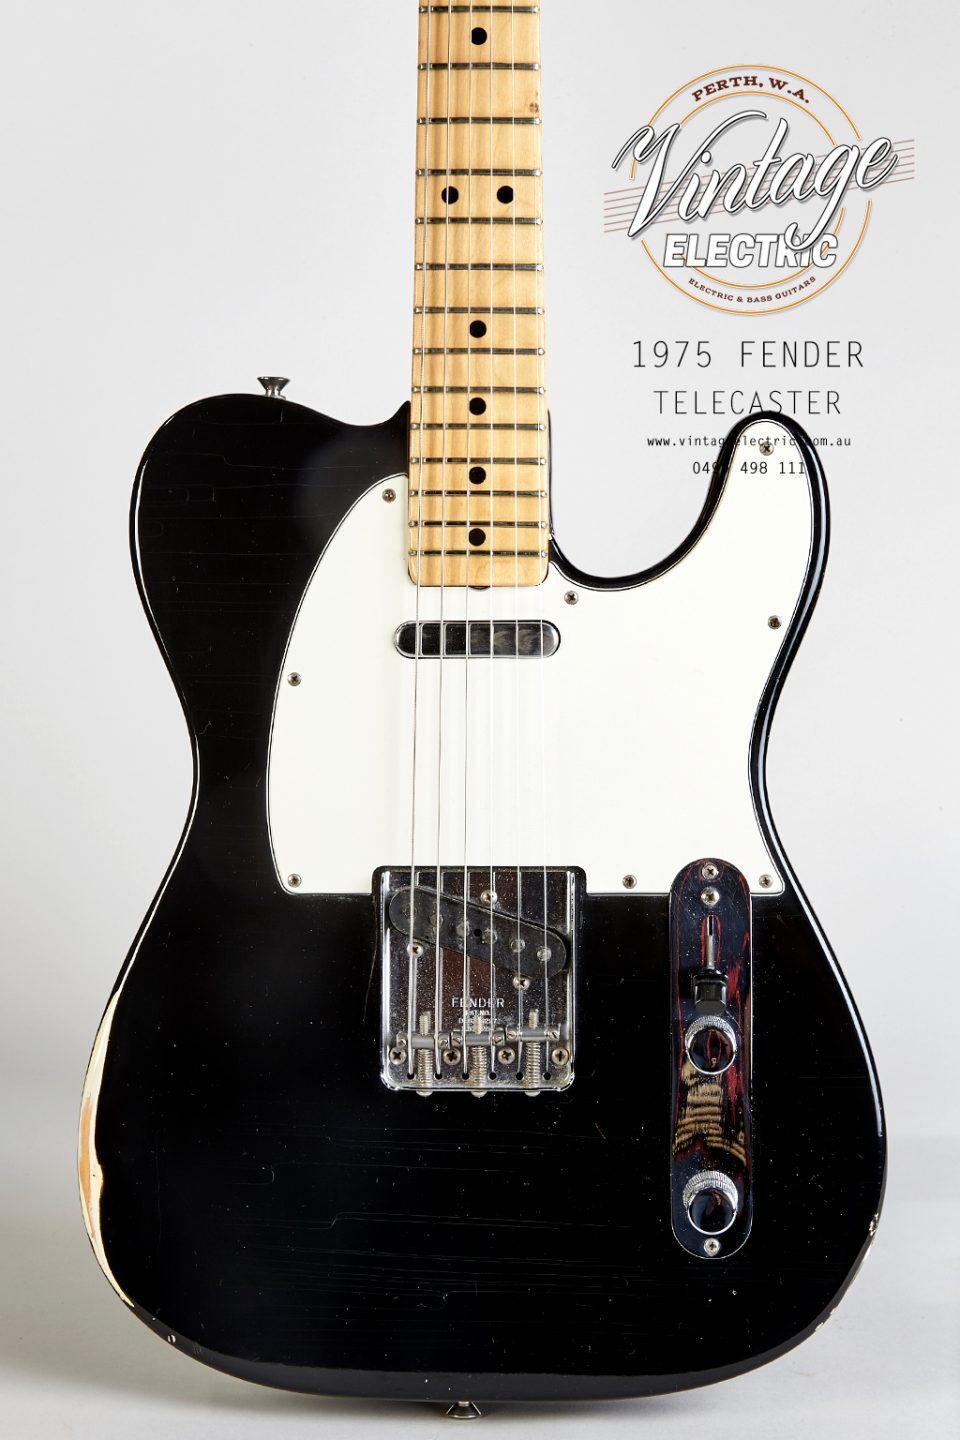 1975 Fender Telecaster Black Body